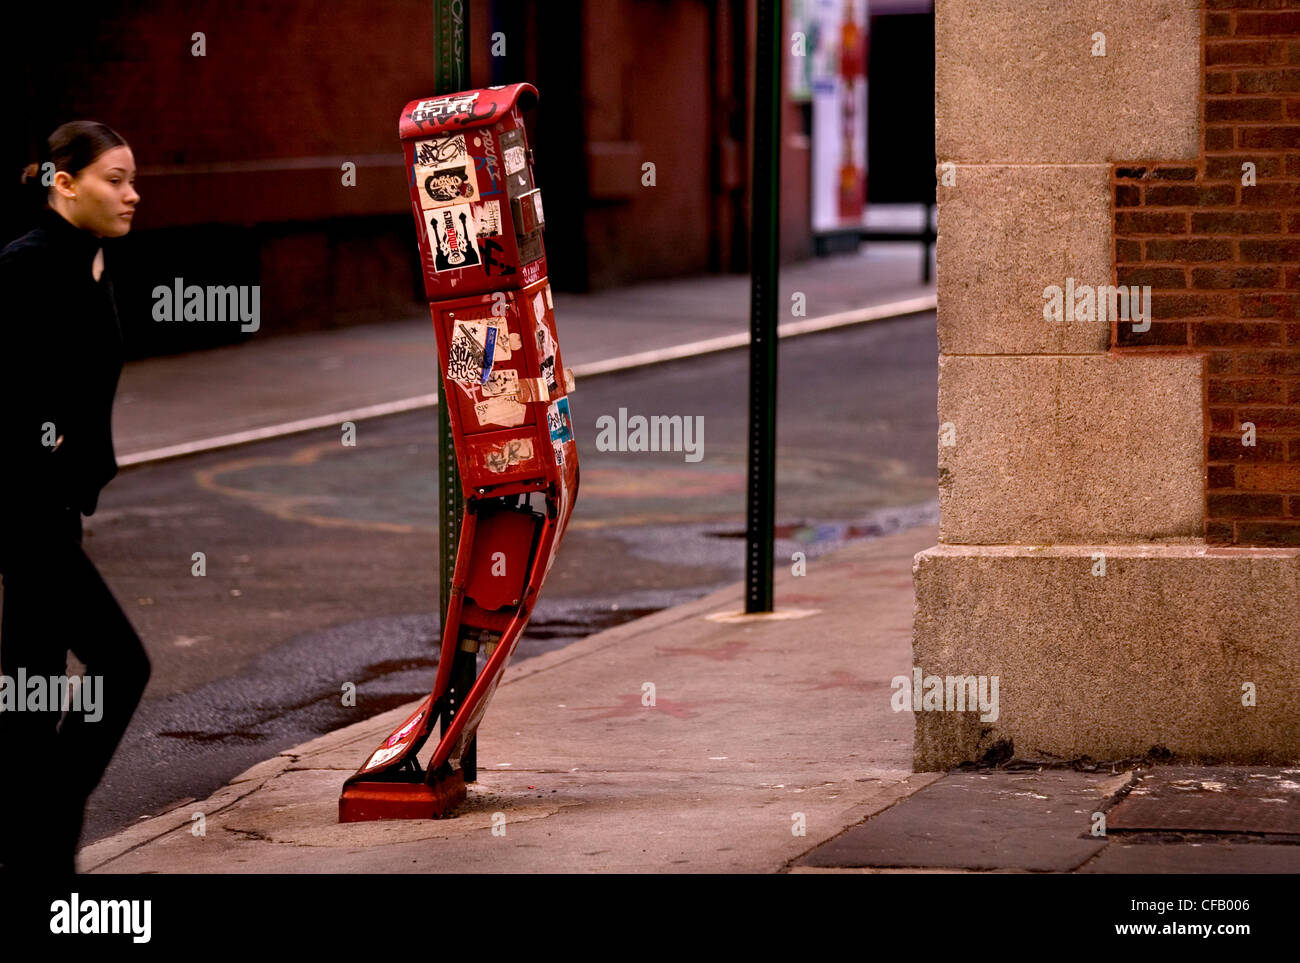 Une femme devant une boîte aux lettres rouge tordues qui fait l'objet d'autocollants et de graffitis. Banque D'Images